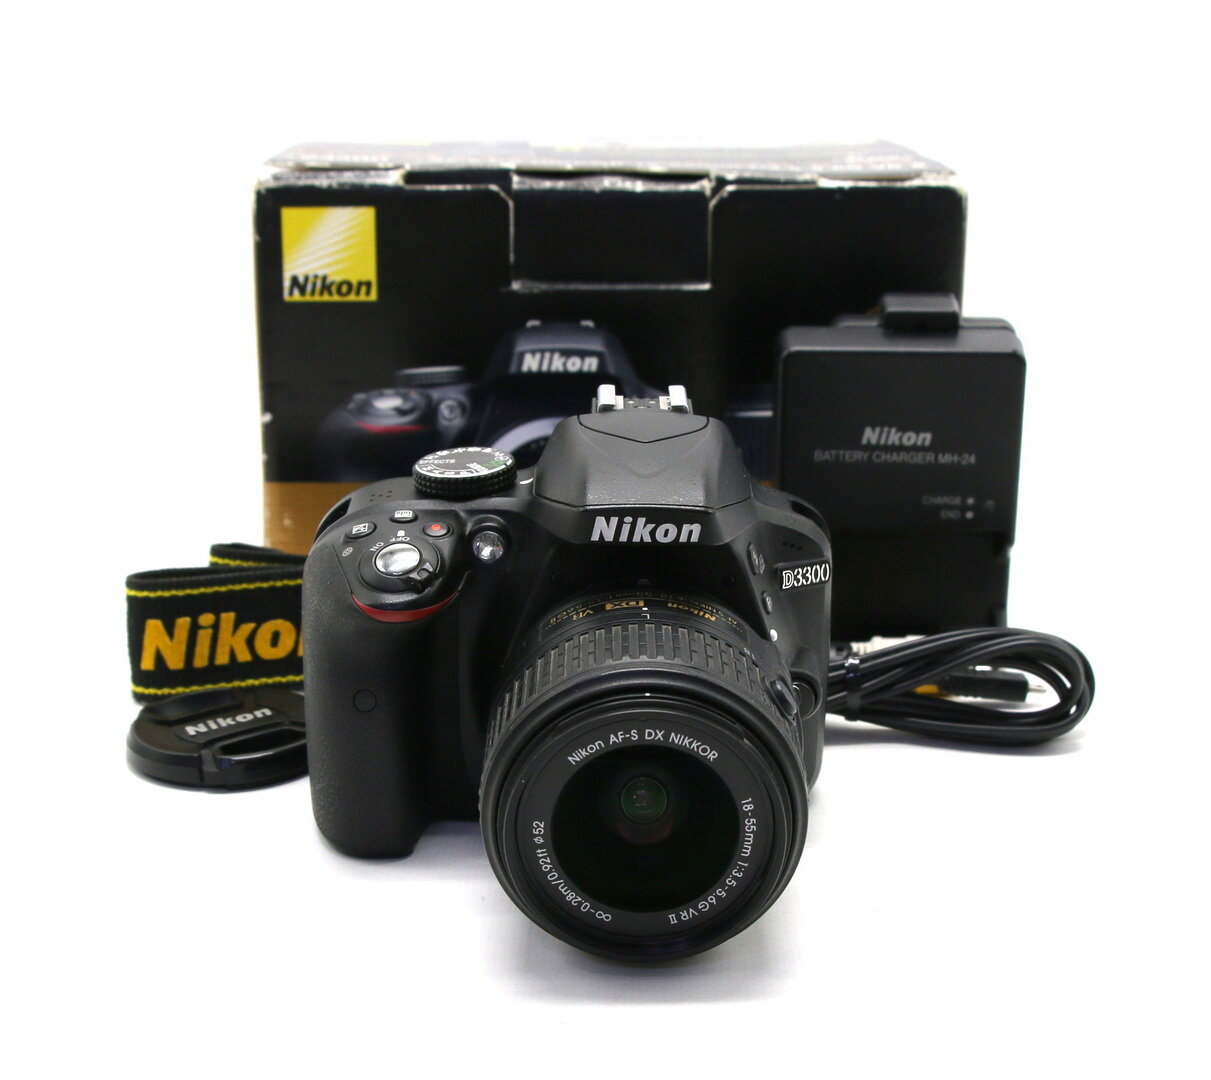 Nikon D3300 kit в упаковке (пробег 7890 кадров)